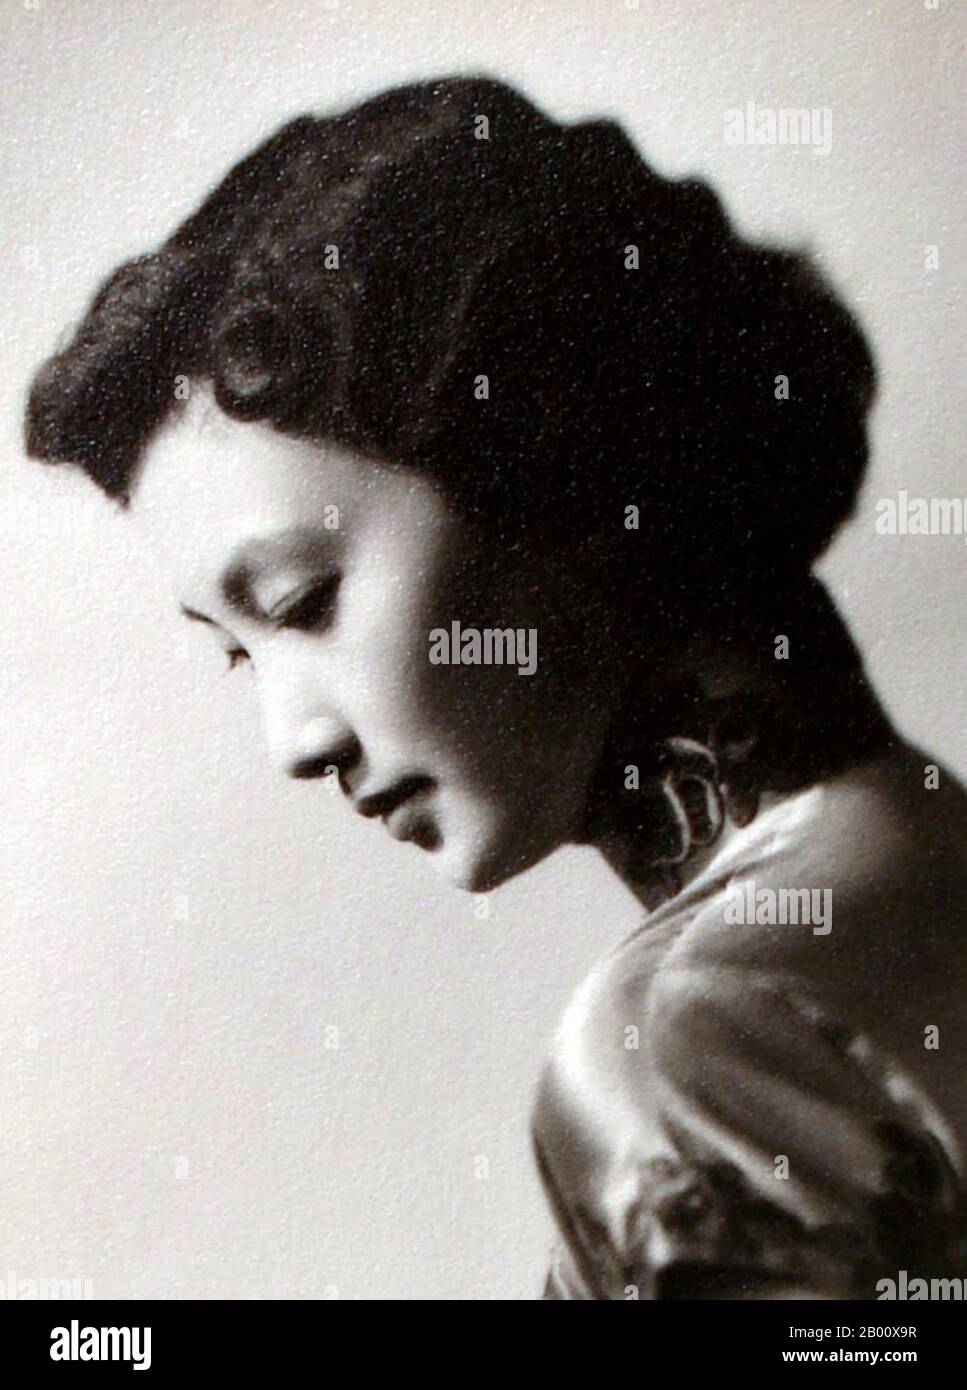 Cina: Xia Meng/HSIA Moon, 'Great Wall Crown Princess' dell'industria cinematografica di Hong Kong, negli anni '50. Xia Meng, nota anche come HSIA Moon o Miranda Yang; Yang Meng, nato il 16 febbraio 1932 a Shanghai, Cina) è una attrice e produttore cinematografico di Hong Kong. Era la figura chiave della scena cinematografica Mandarin dell'ala sinistra di Hong Kong. Foto Stock